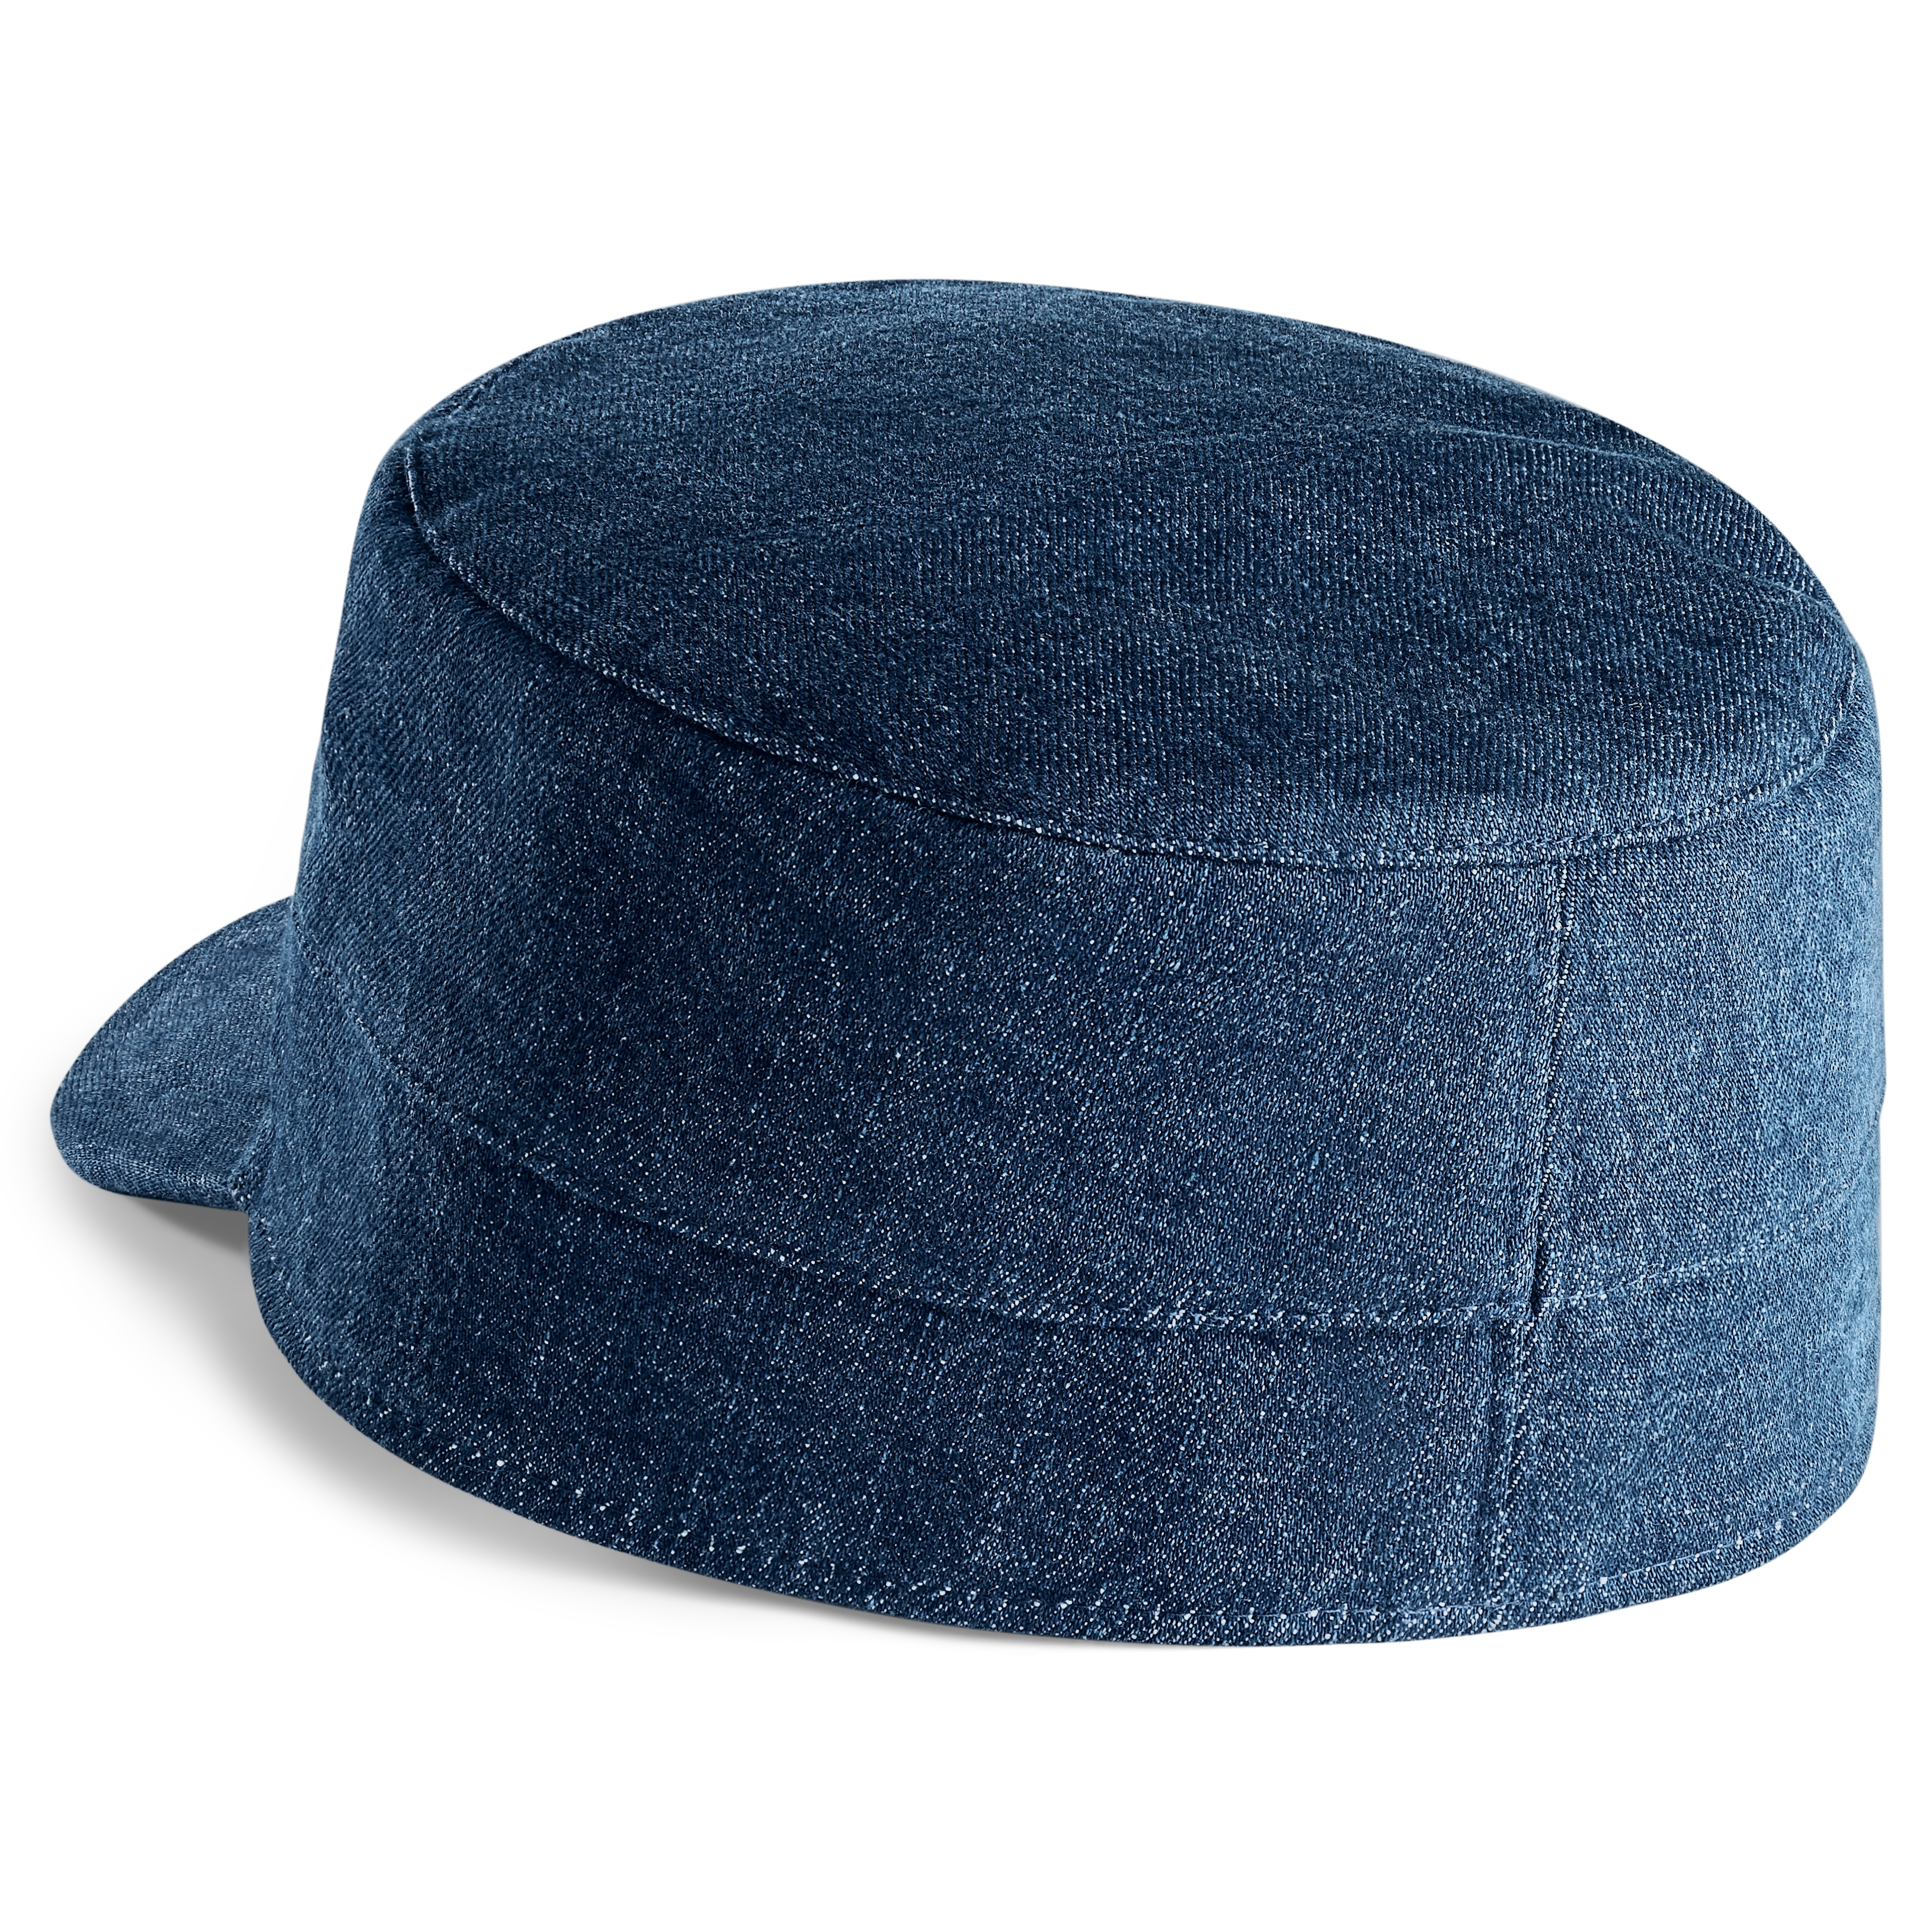 Tipos de gorras para hombre y cómo identificarlas – StylerMx